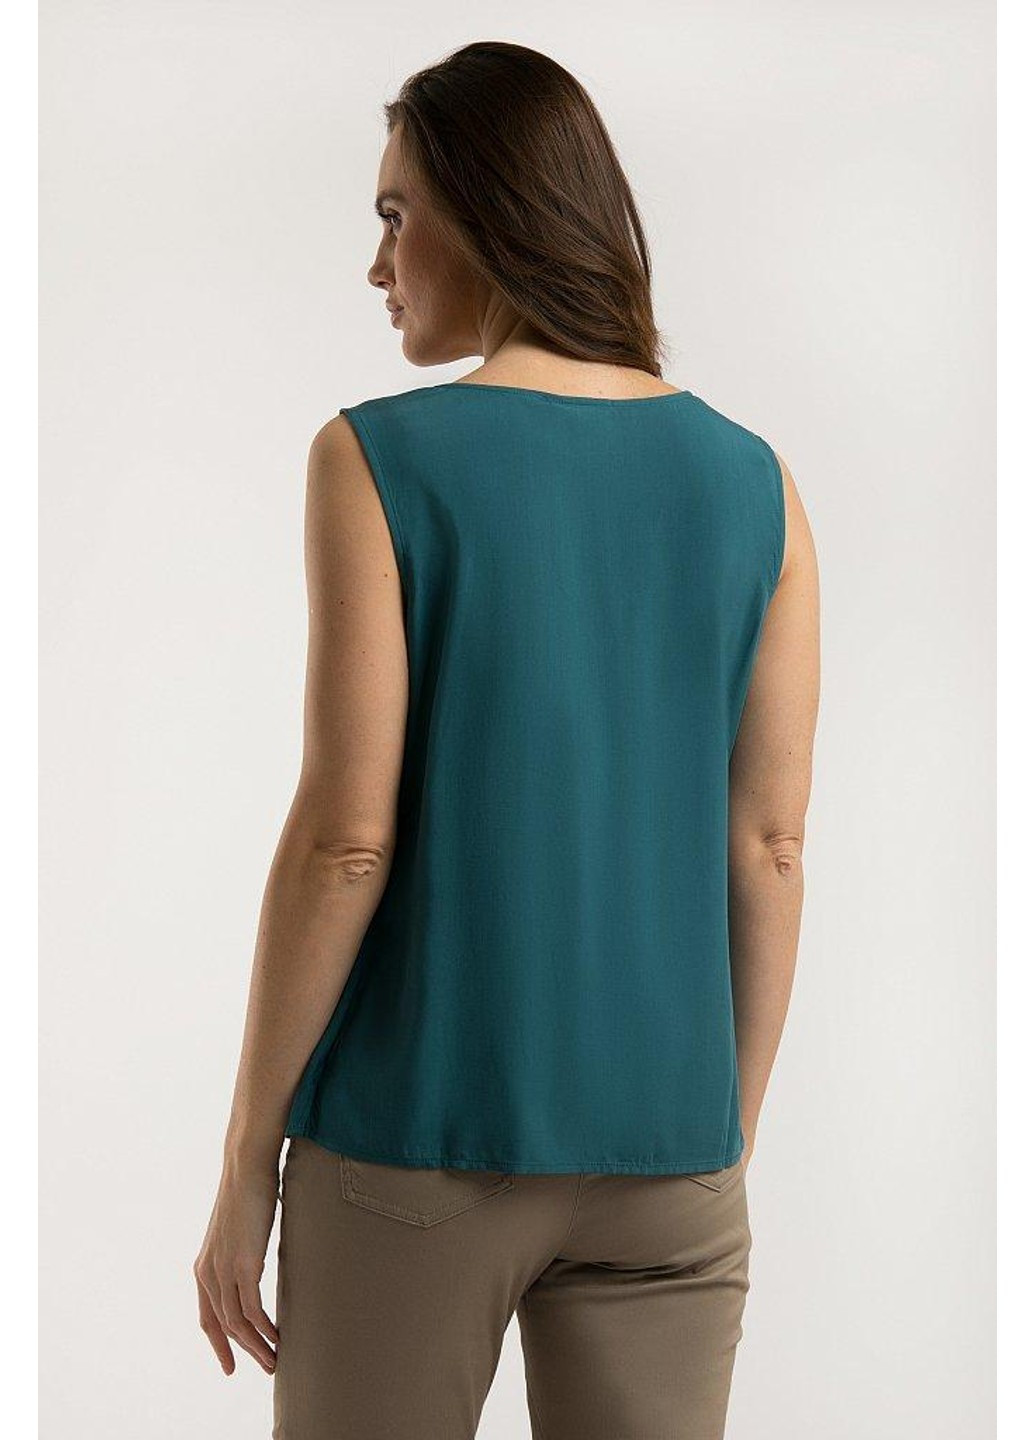 Зеленая летняя блуза s20-14015-128 Finn Flare